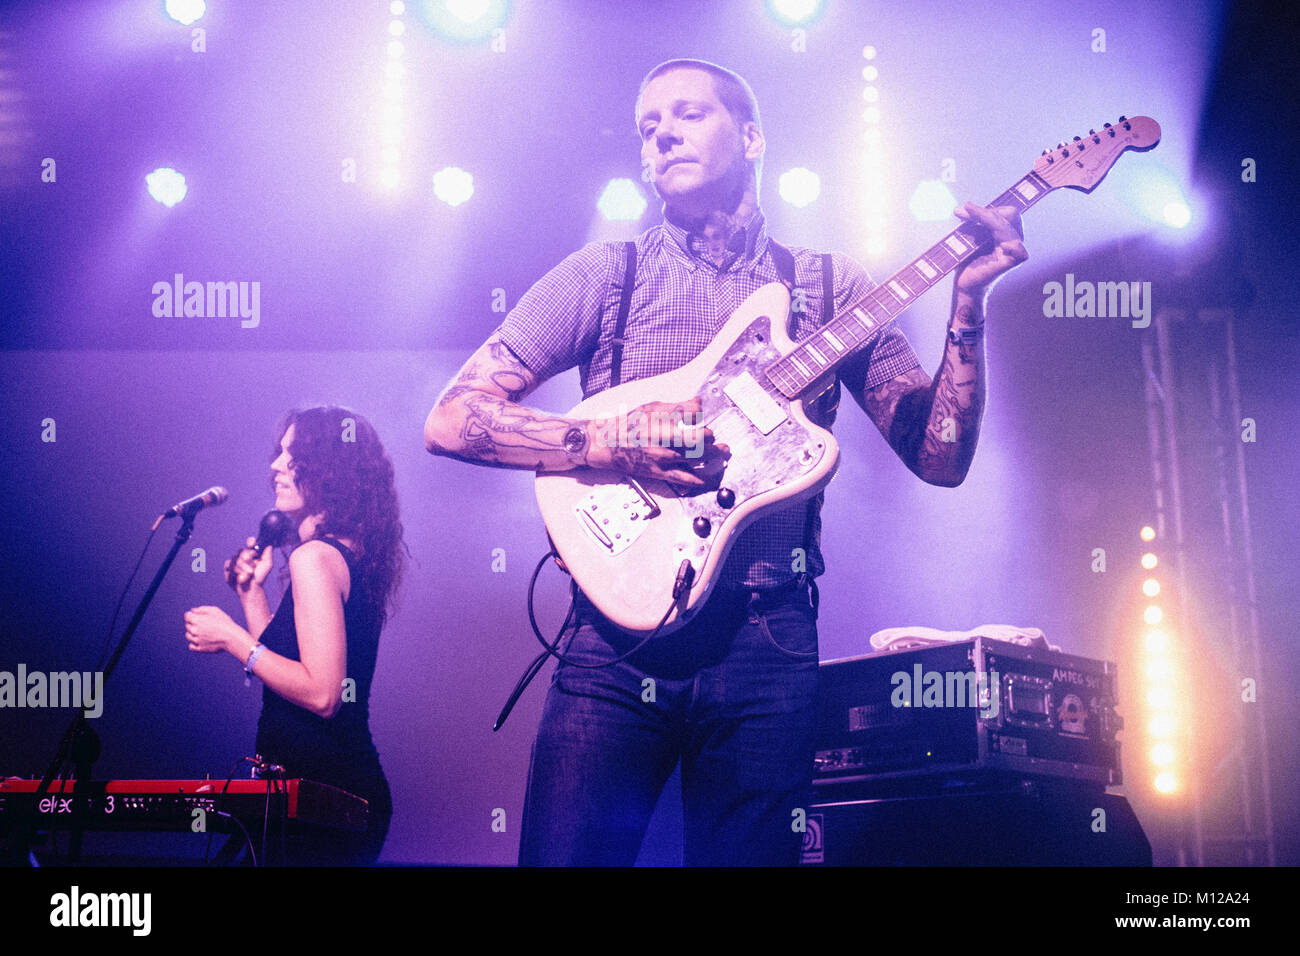 Musicien et guitariste Petey Dammit du groupe de rock psychédélique américain toi Oh voit photographié sur scène avec sa guitare. Pologne 2013. Banque D'Images